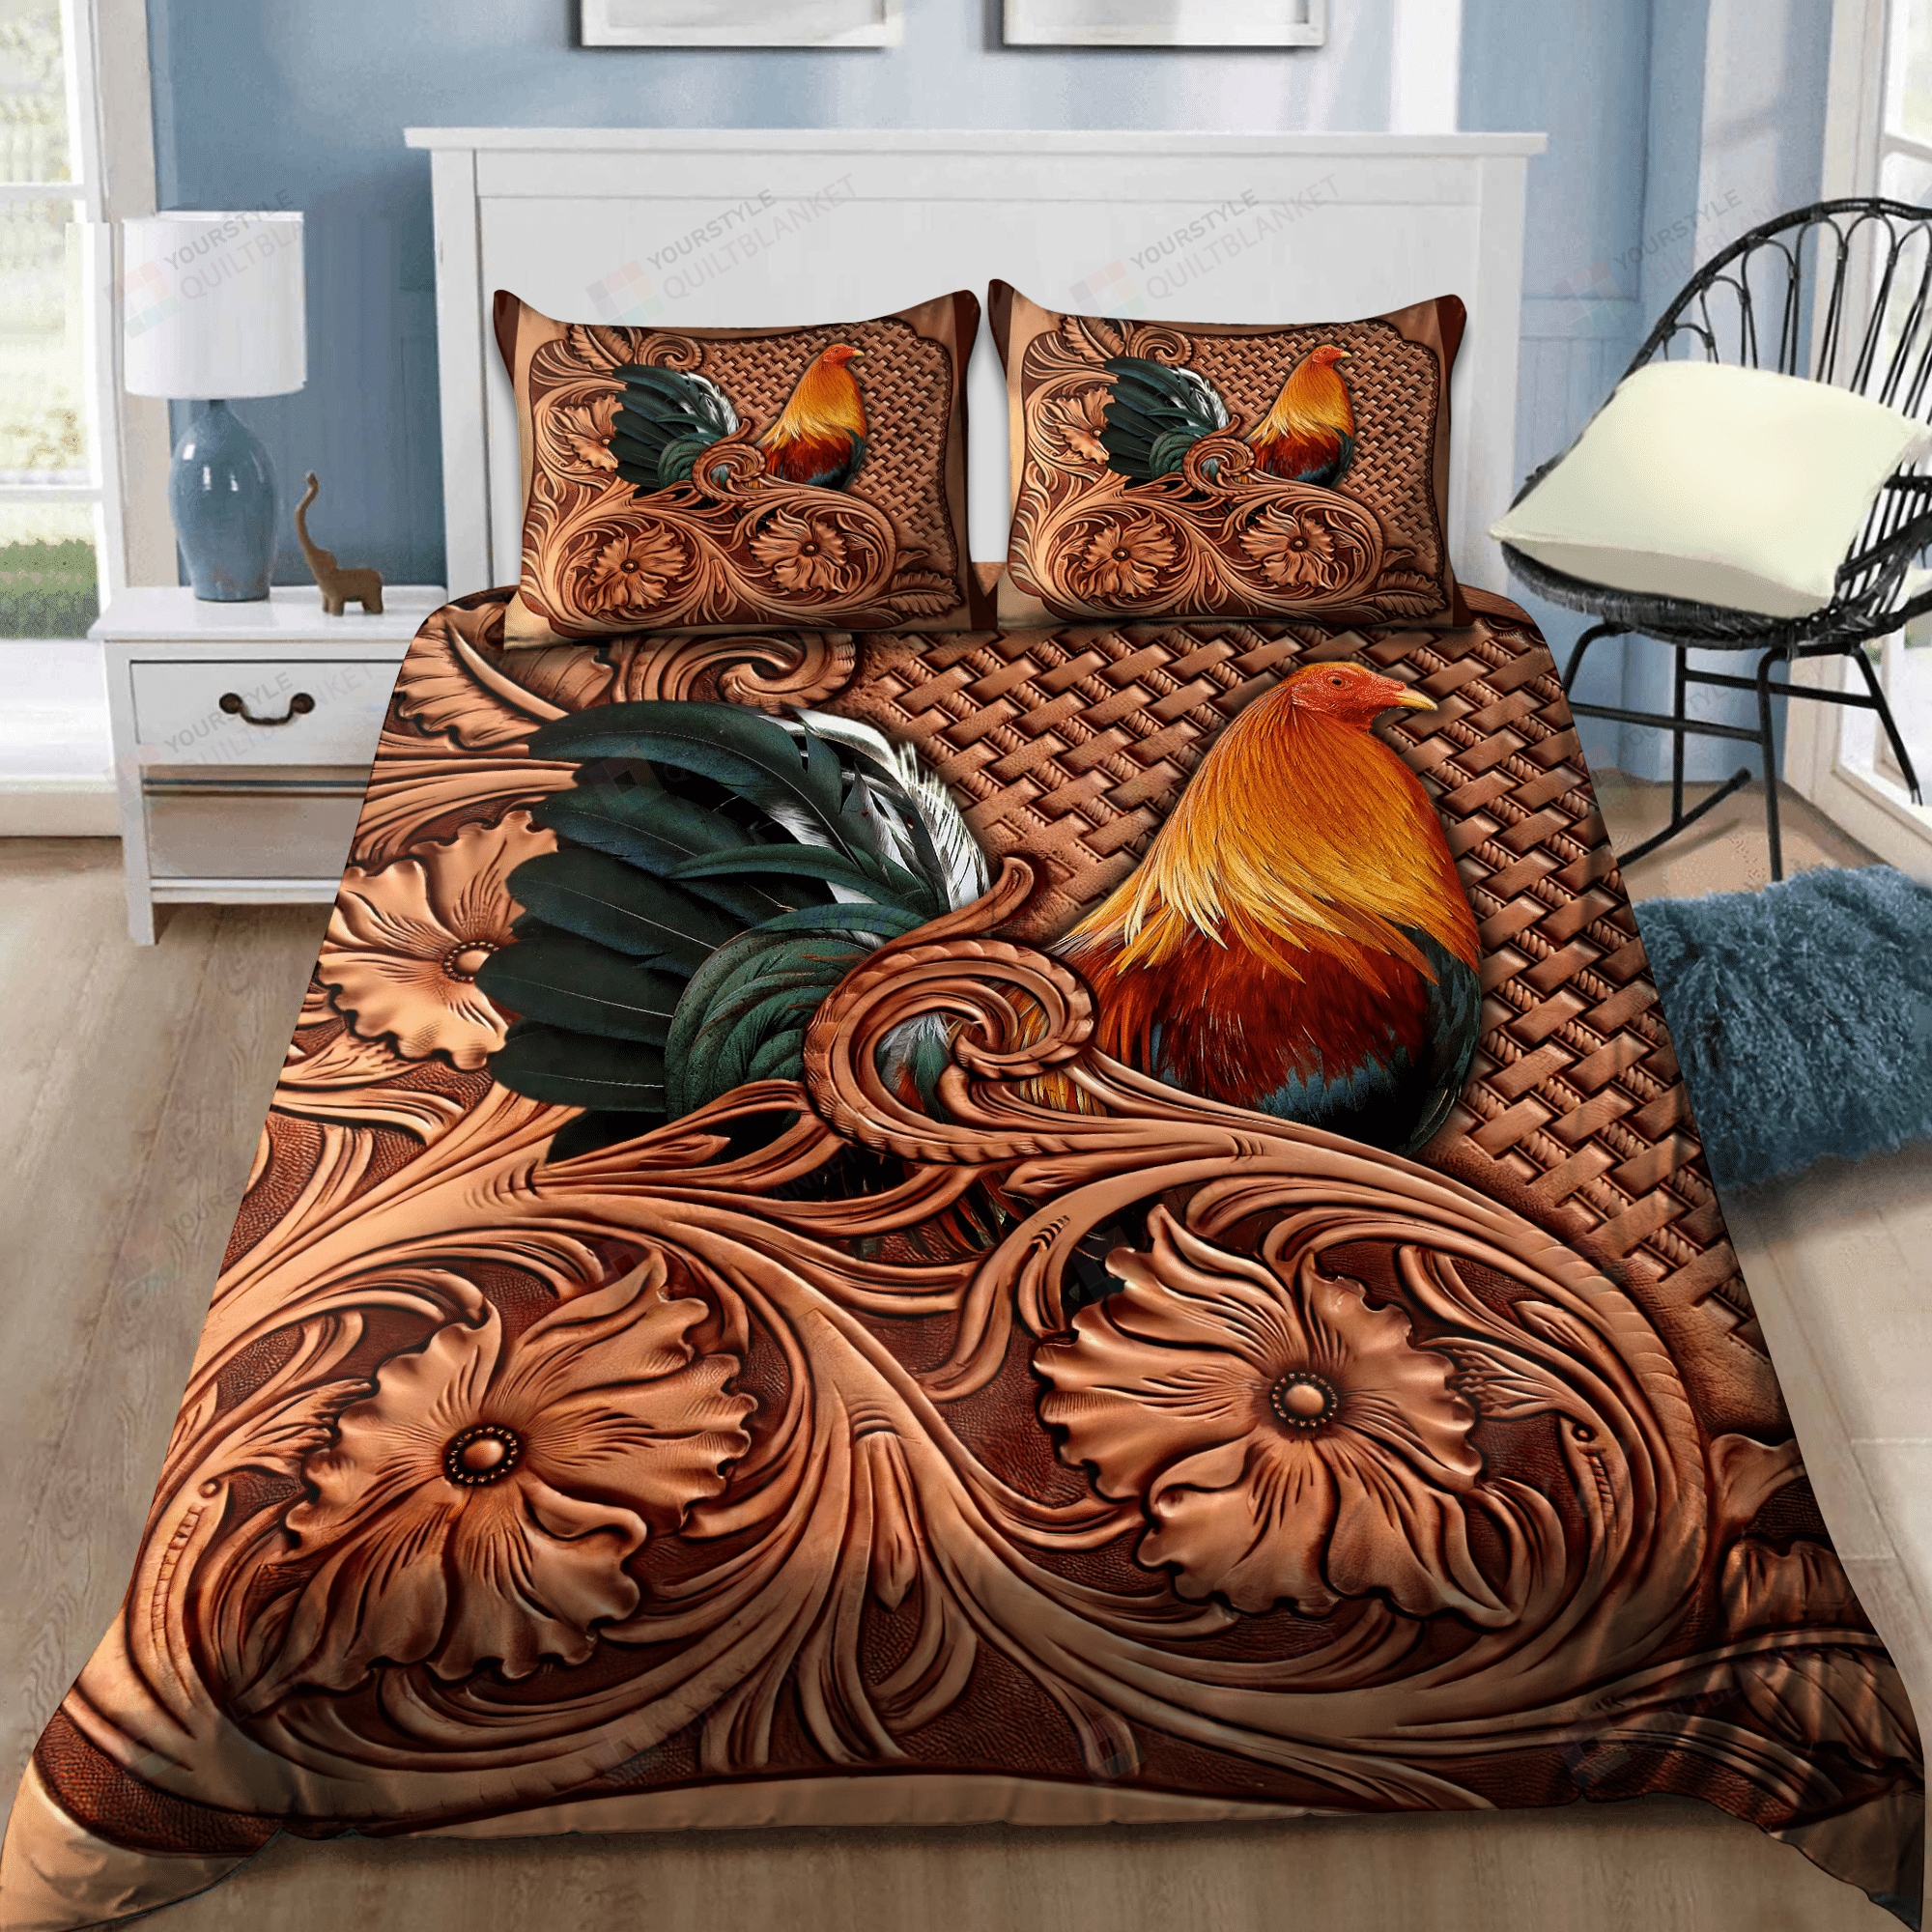 Rooster Bedding Set Bed Sheets Spread Comforter Duvet Cover Bedding Sets